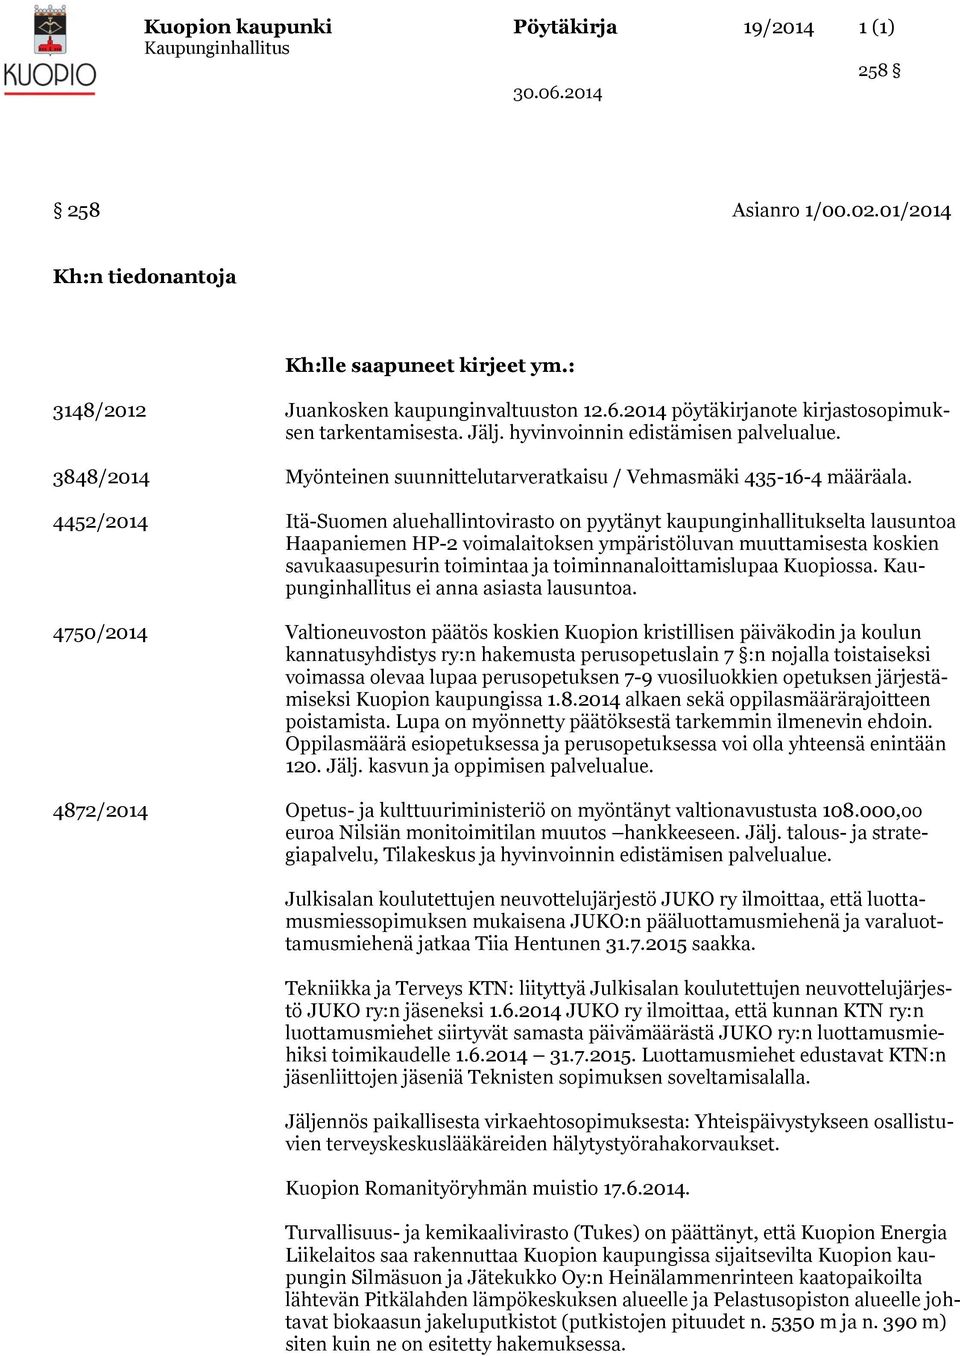 4452/ Itä-Suomen aluehallintovirasto on pyytänyt kaupunginhallitukselta lausuntoa Haapaniemen HP-2 voimalaitoksen ympäristöluvan muuttamisesta koskien savukaasupesurin toimintaa ja